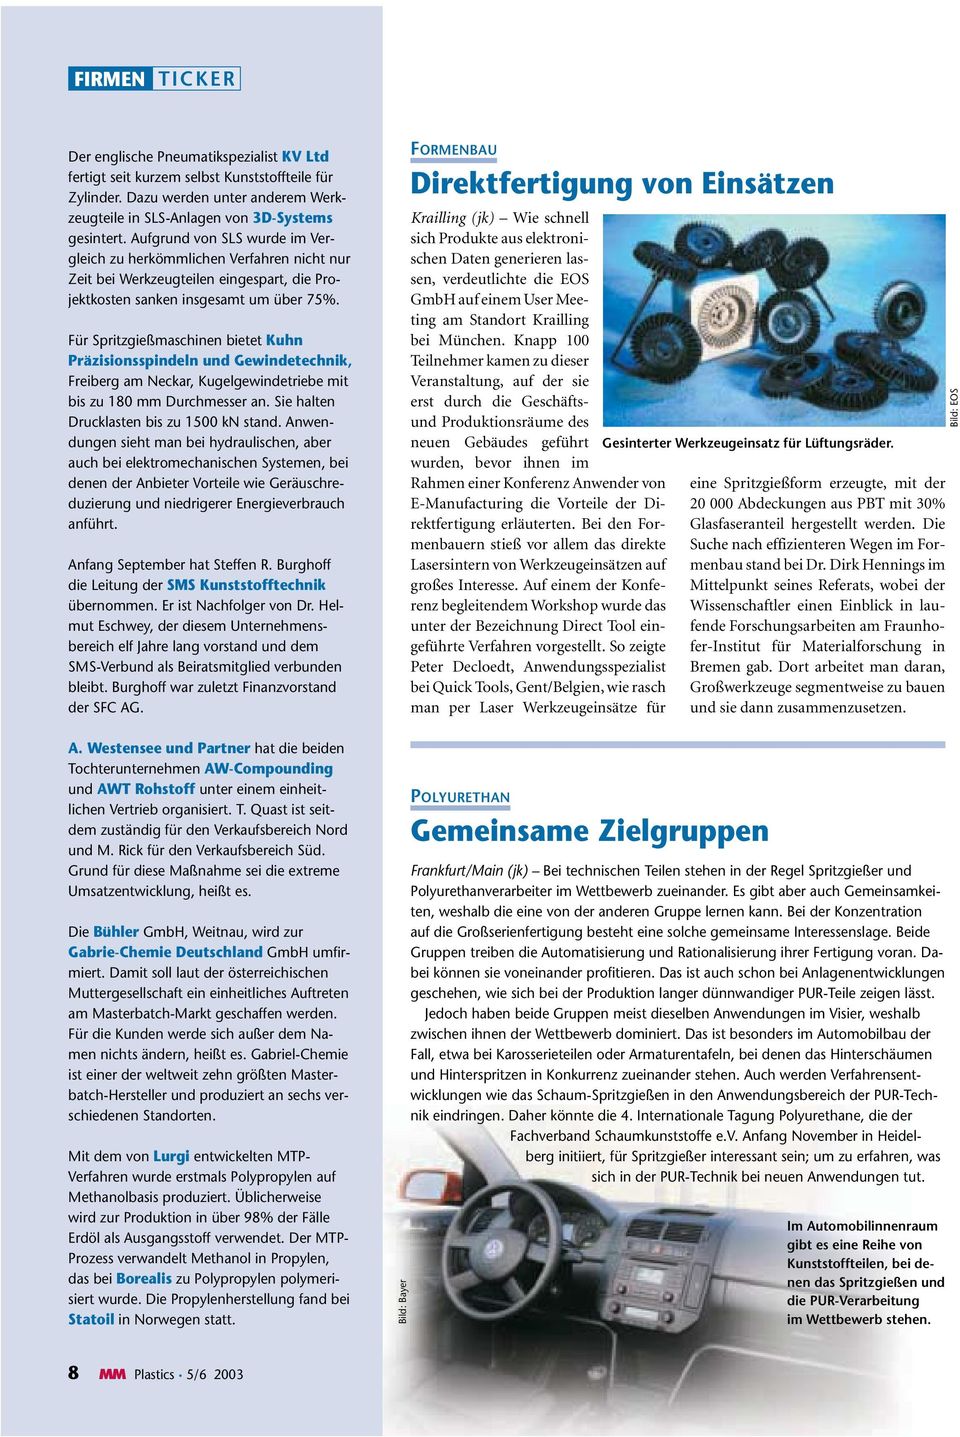 Für Spritzgießmaschinen bietet Kuhn Präzisionsspindeln und Gewindetechnik, Freiberg am Neckar, Kugelgewindetriebe mit bis zu 180 mm Durchmesser an. Sie halten Drucklasten bis zu 1500 kn stand.